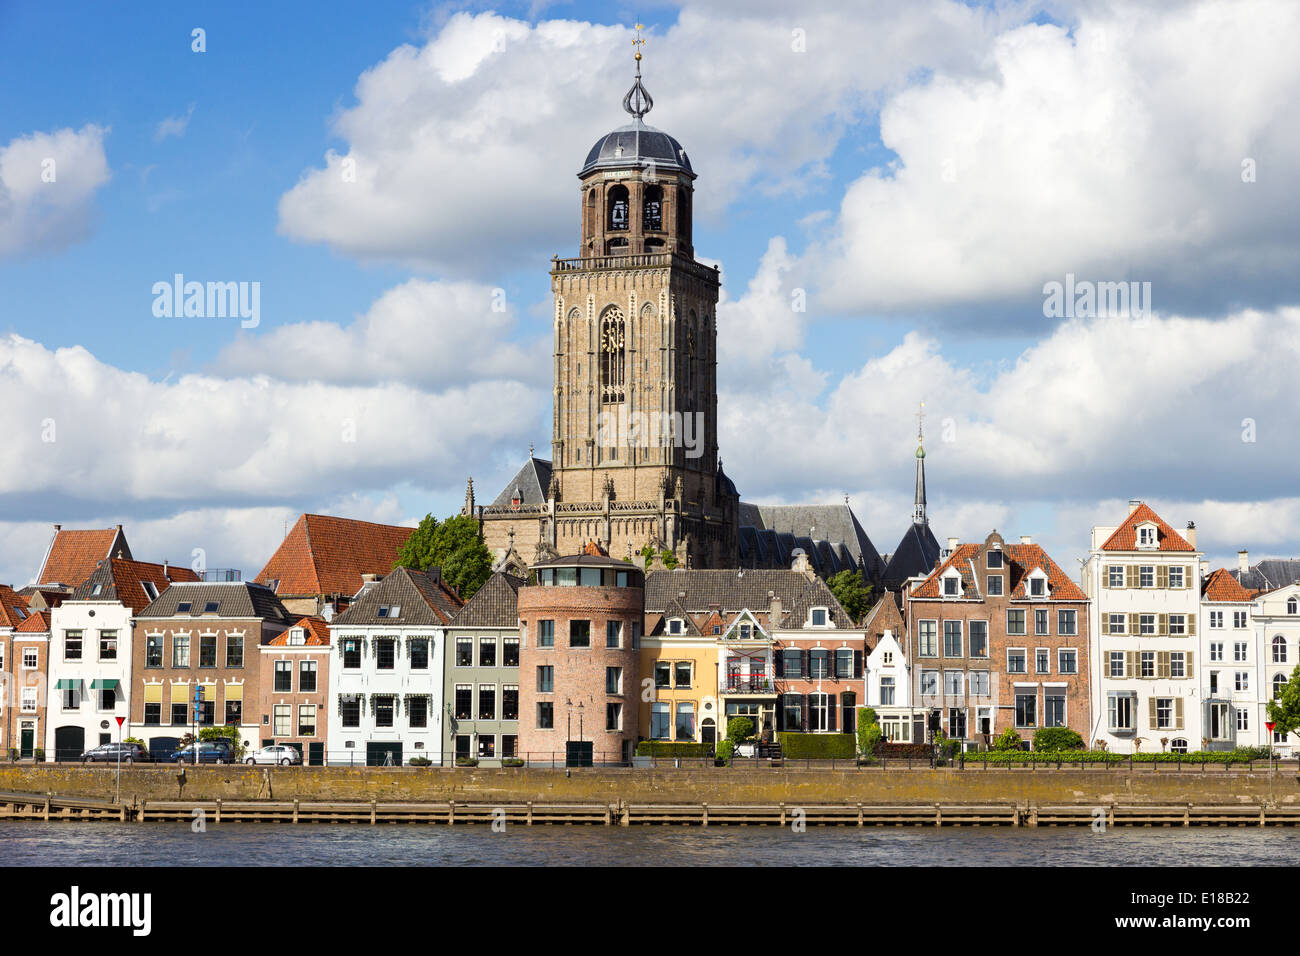 Vue sur la ville de Deventer, Pays-Bas Banque D'Images